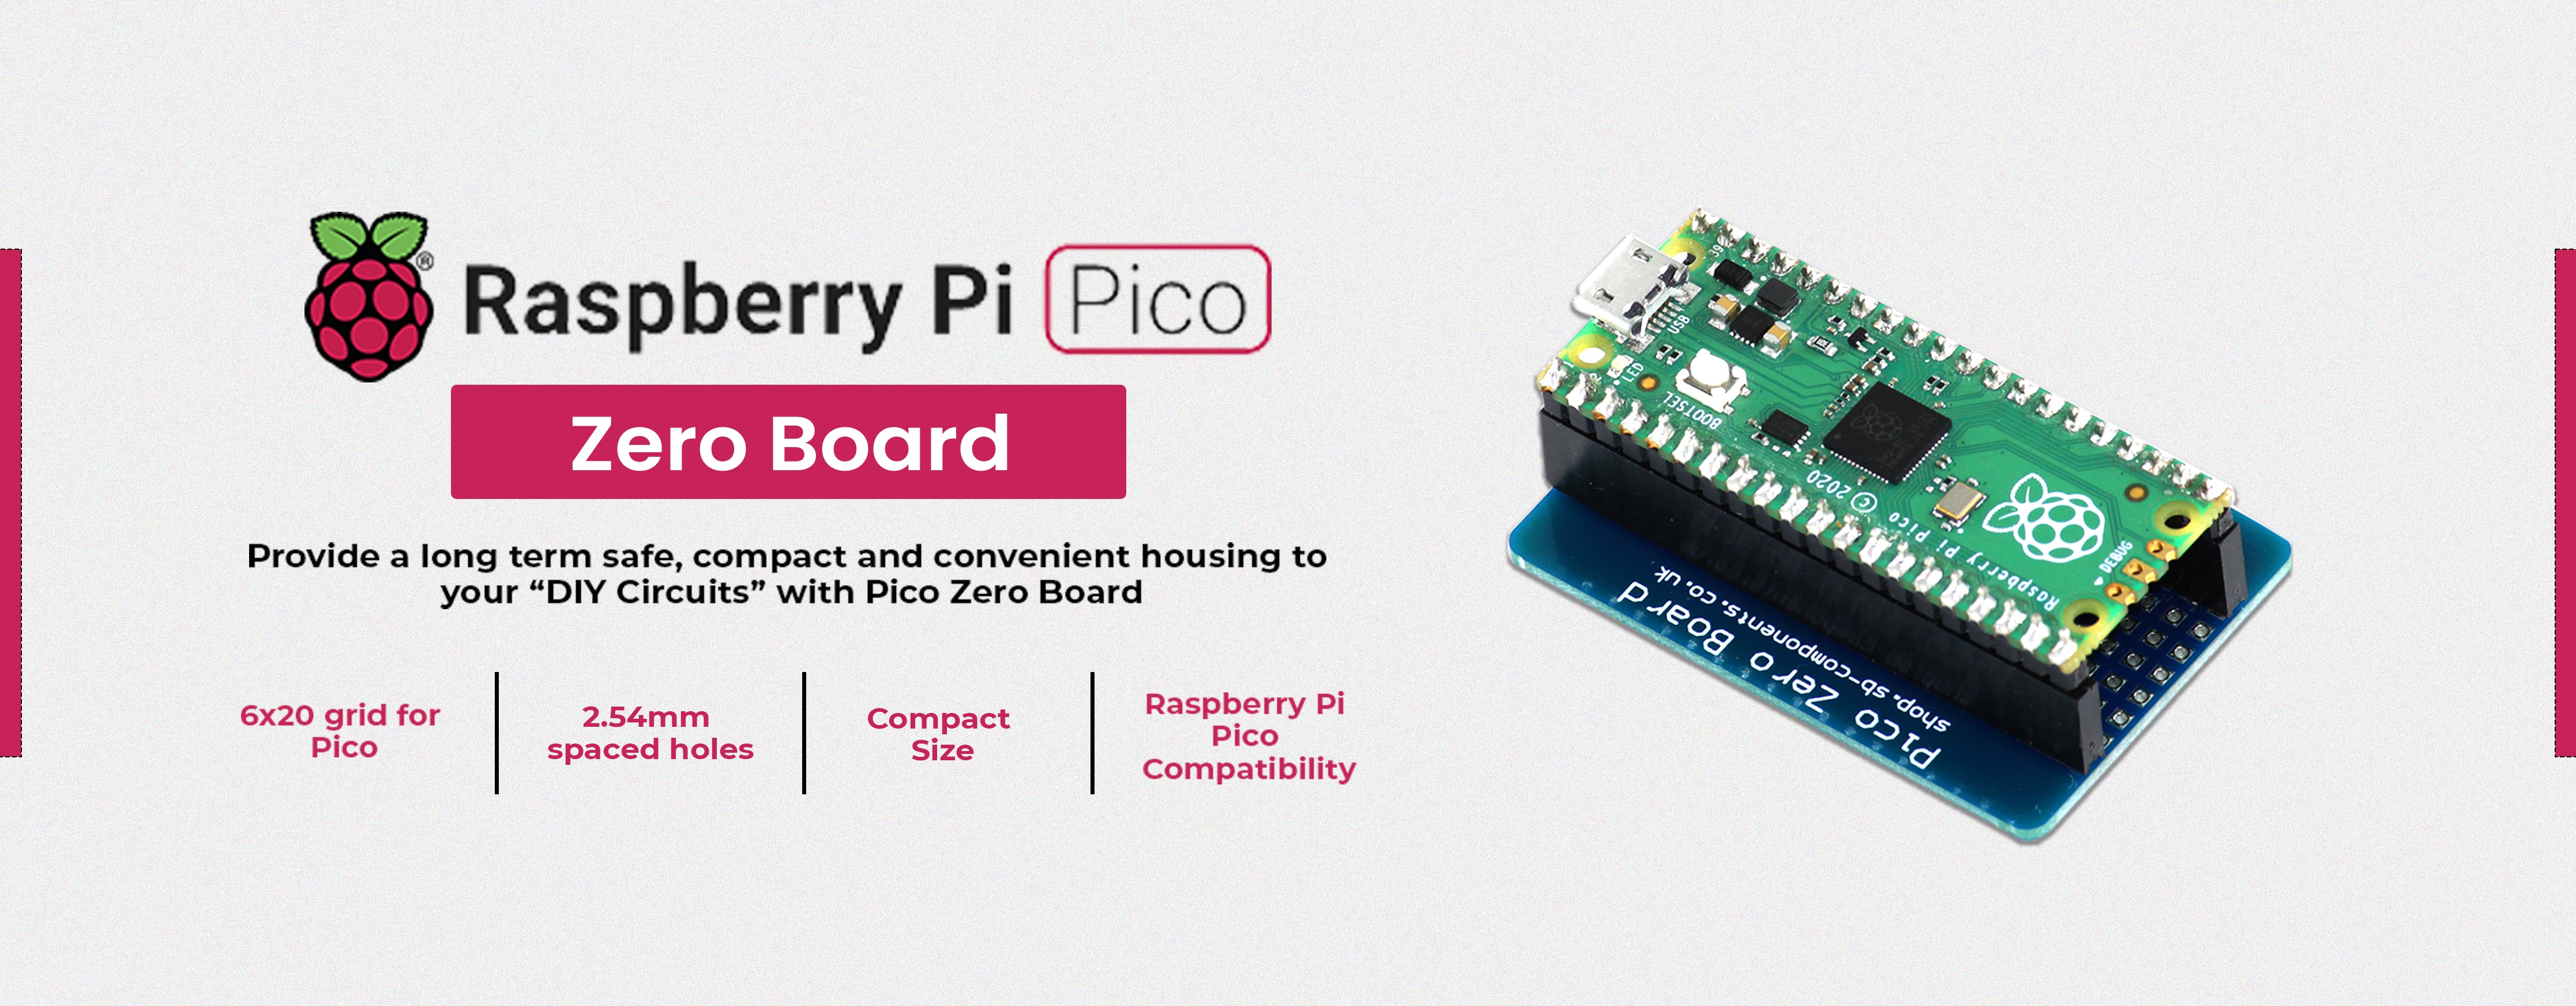 Pico Zero Board